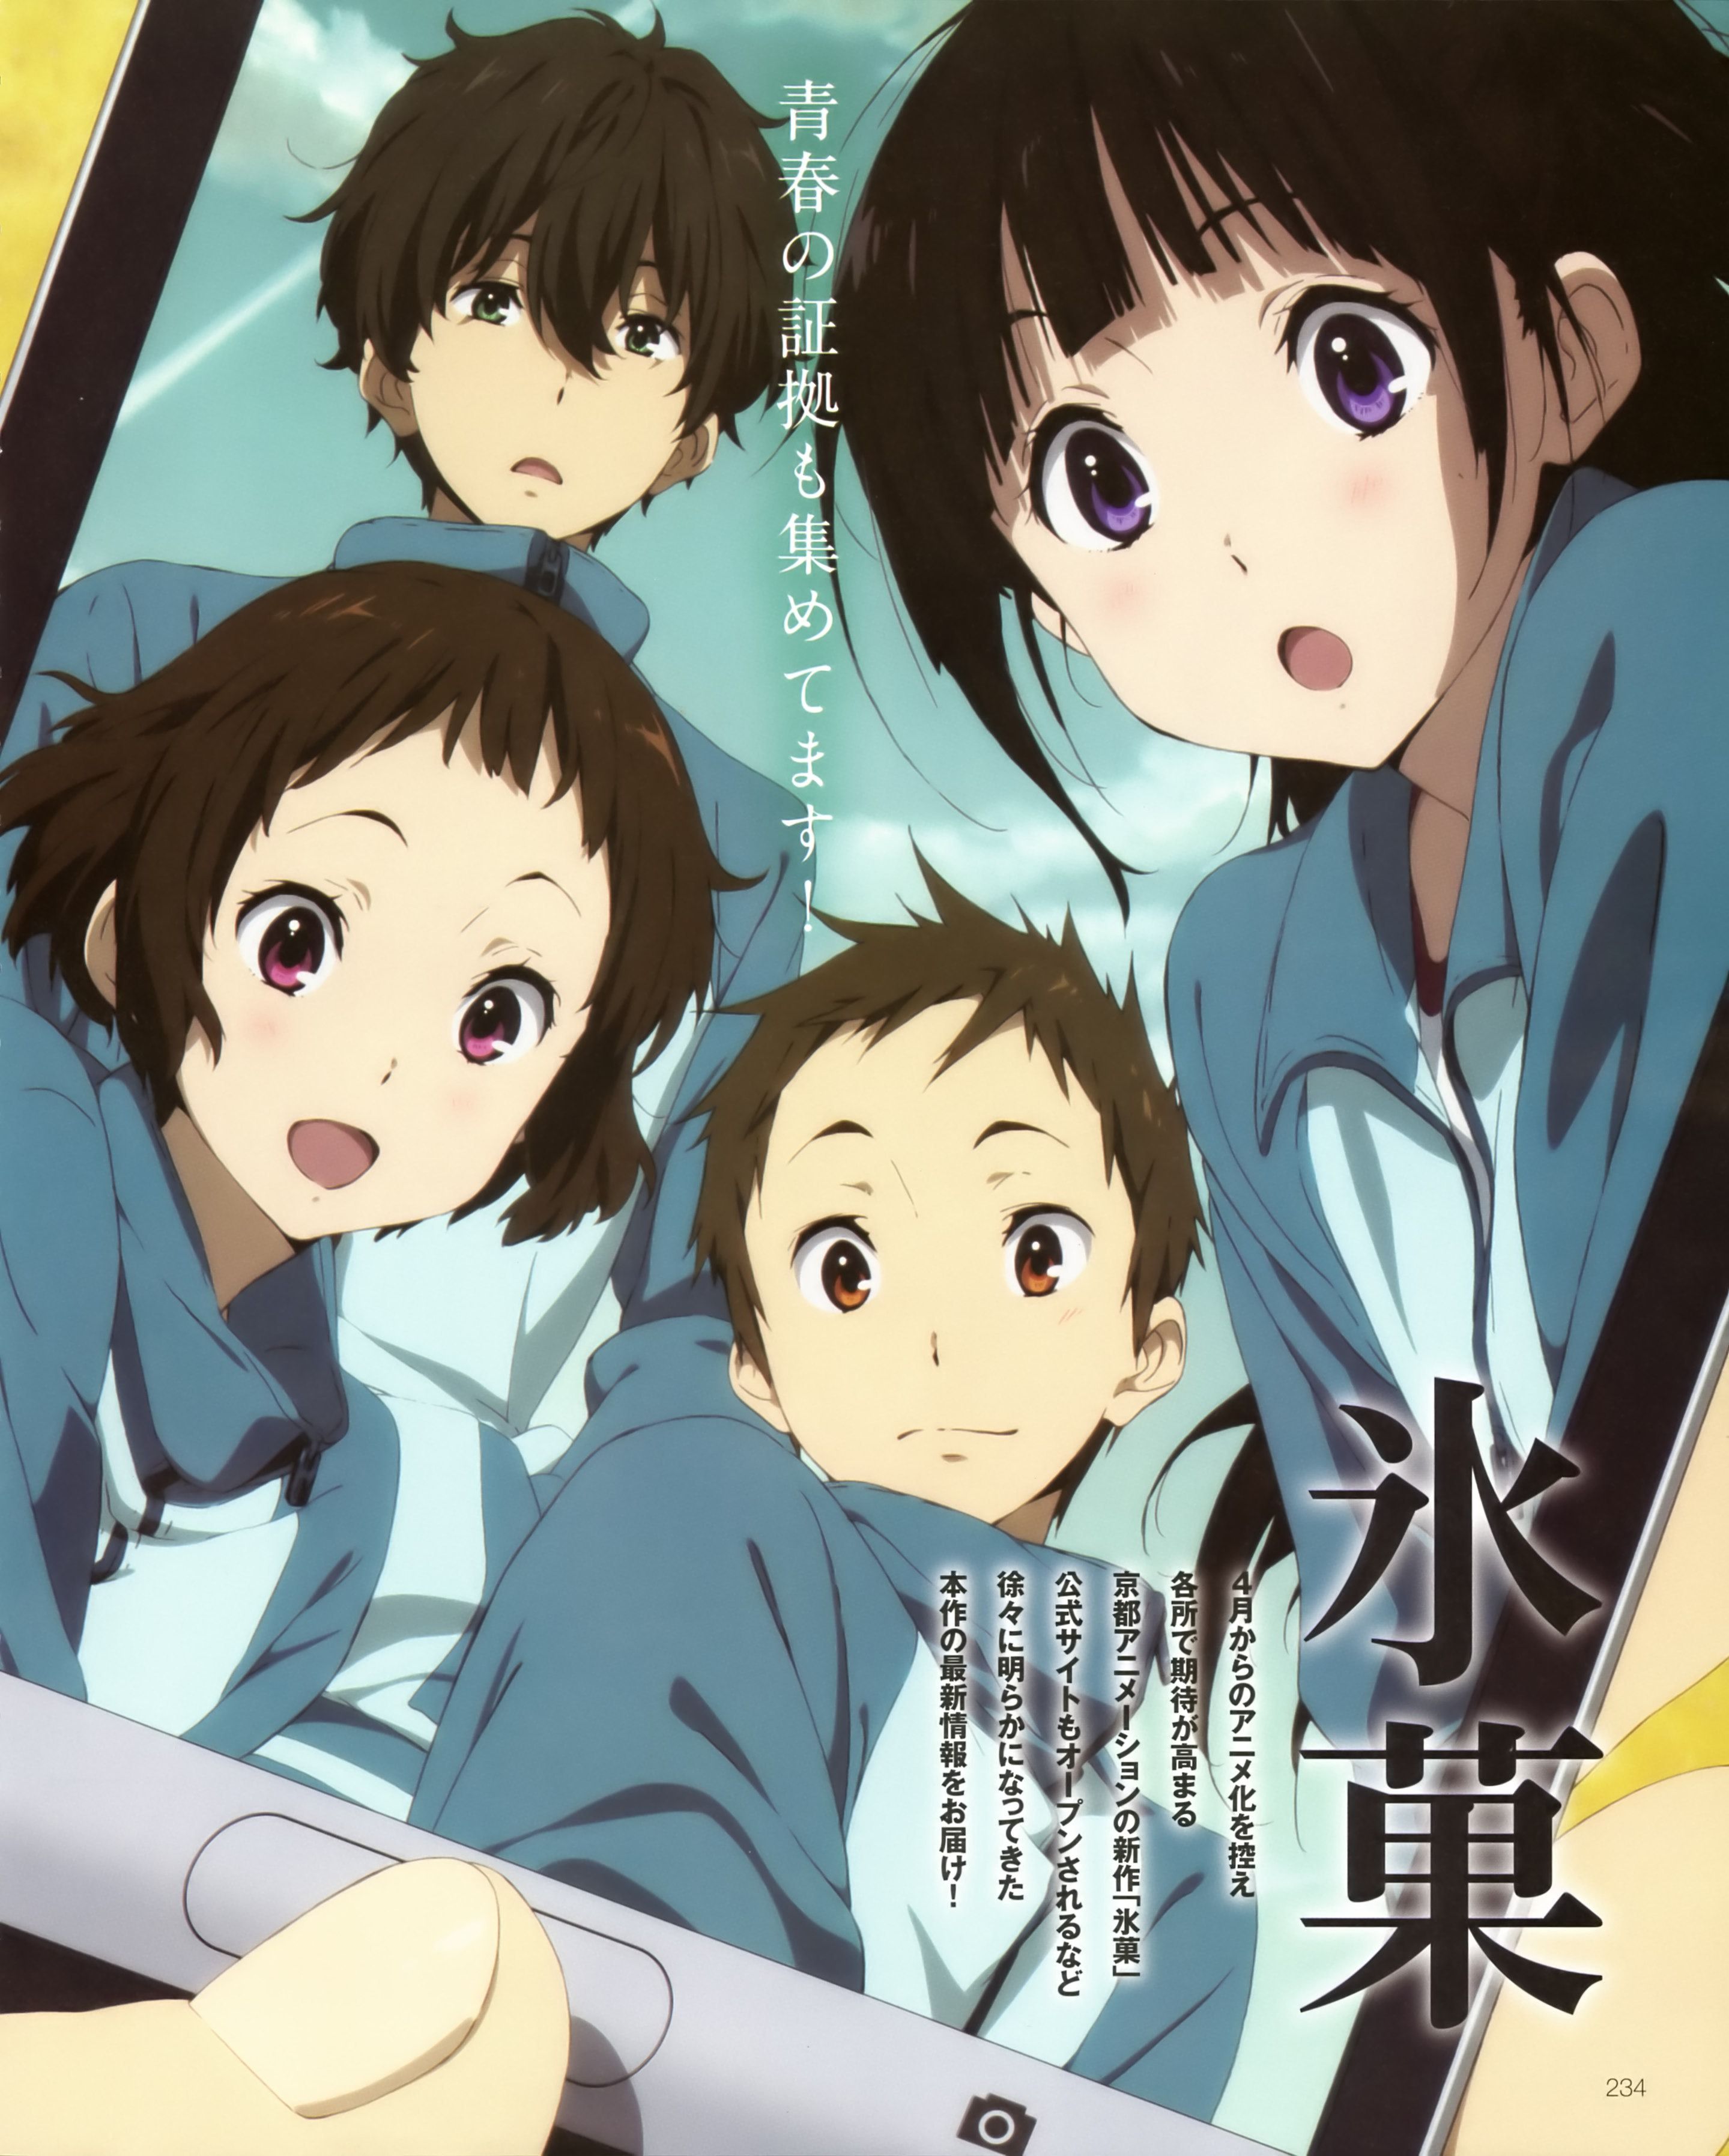 Hyouka Anime Image Board